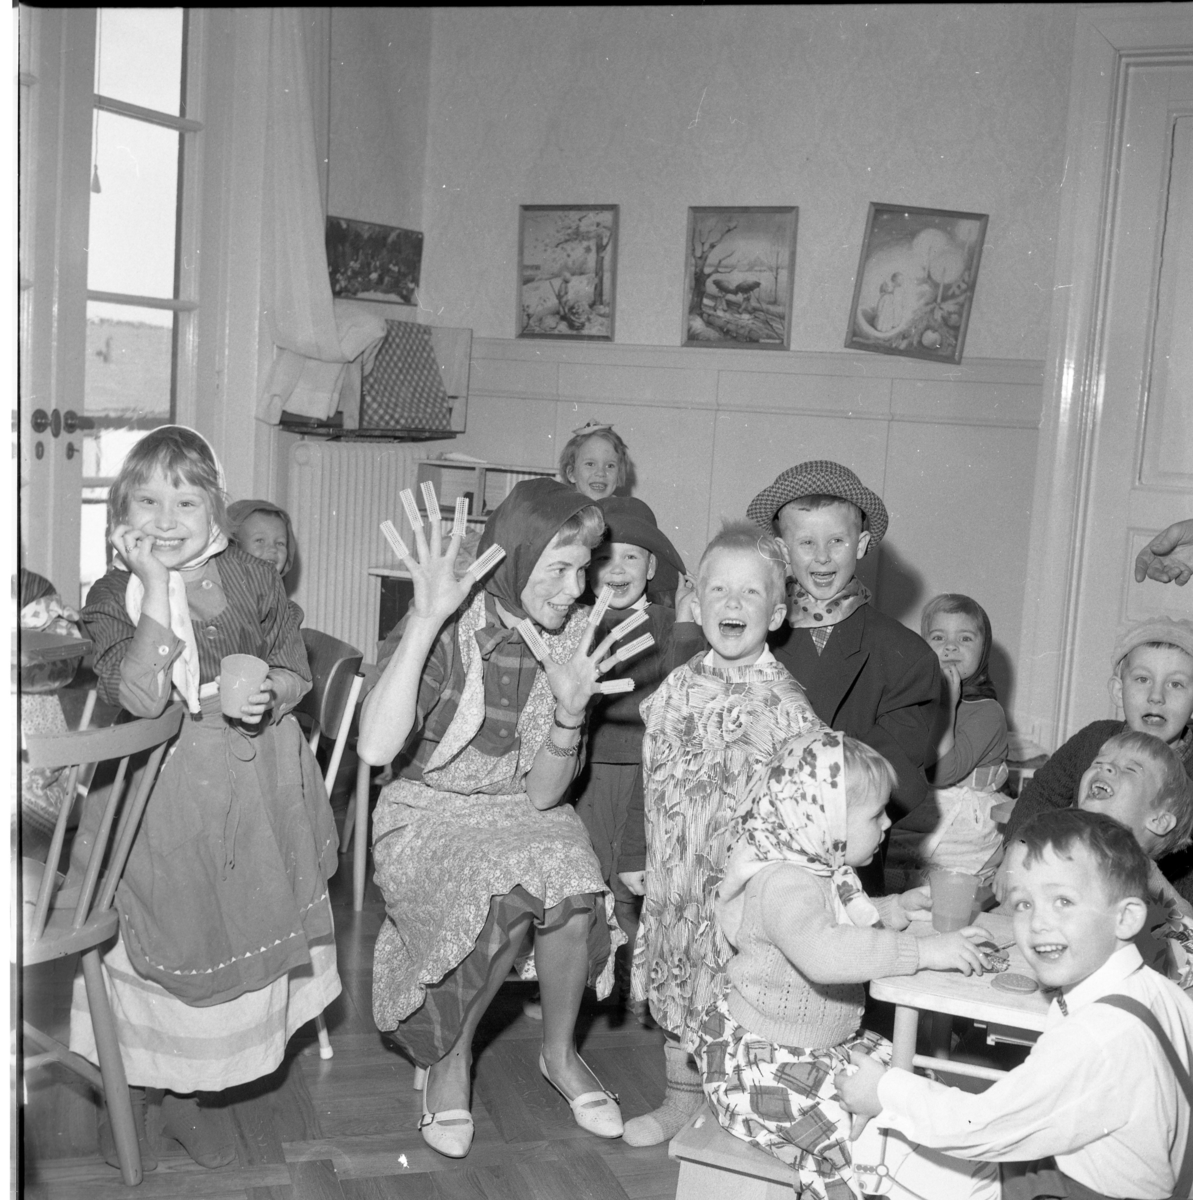 Lekskolan i Gränna 1963. Okända maskeradklädda barn, möjligen påsktid.